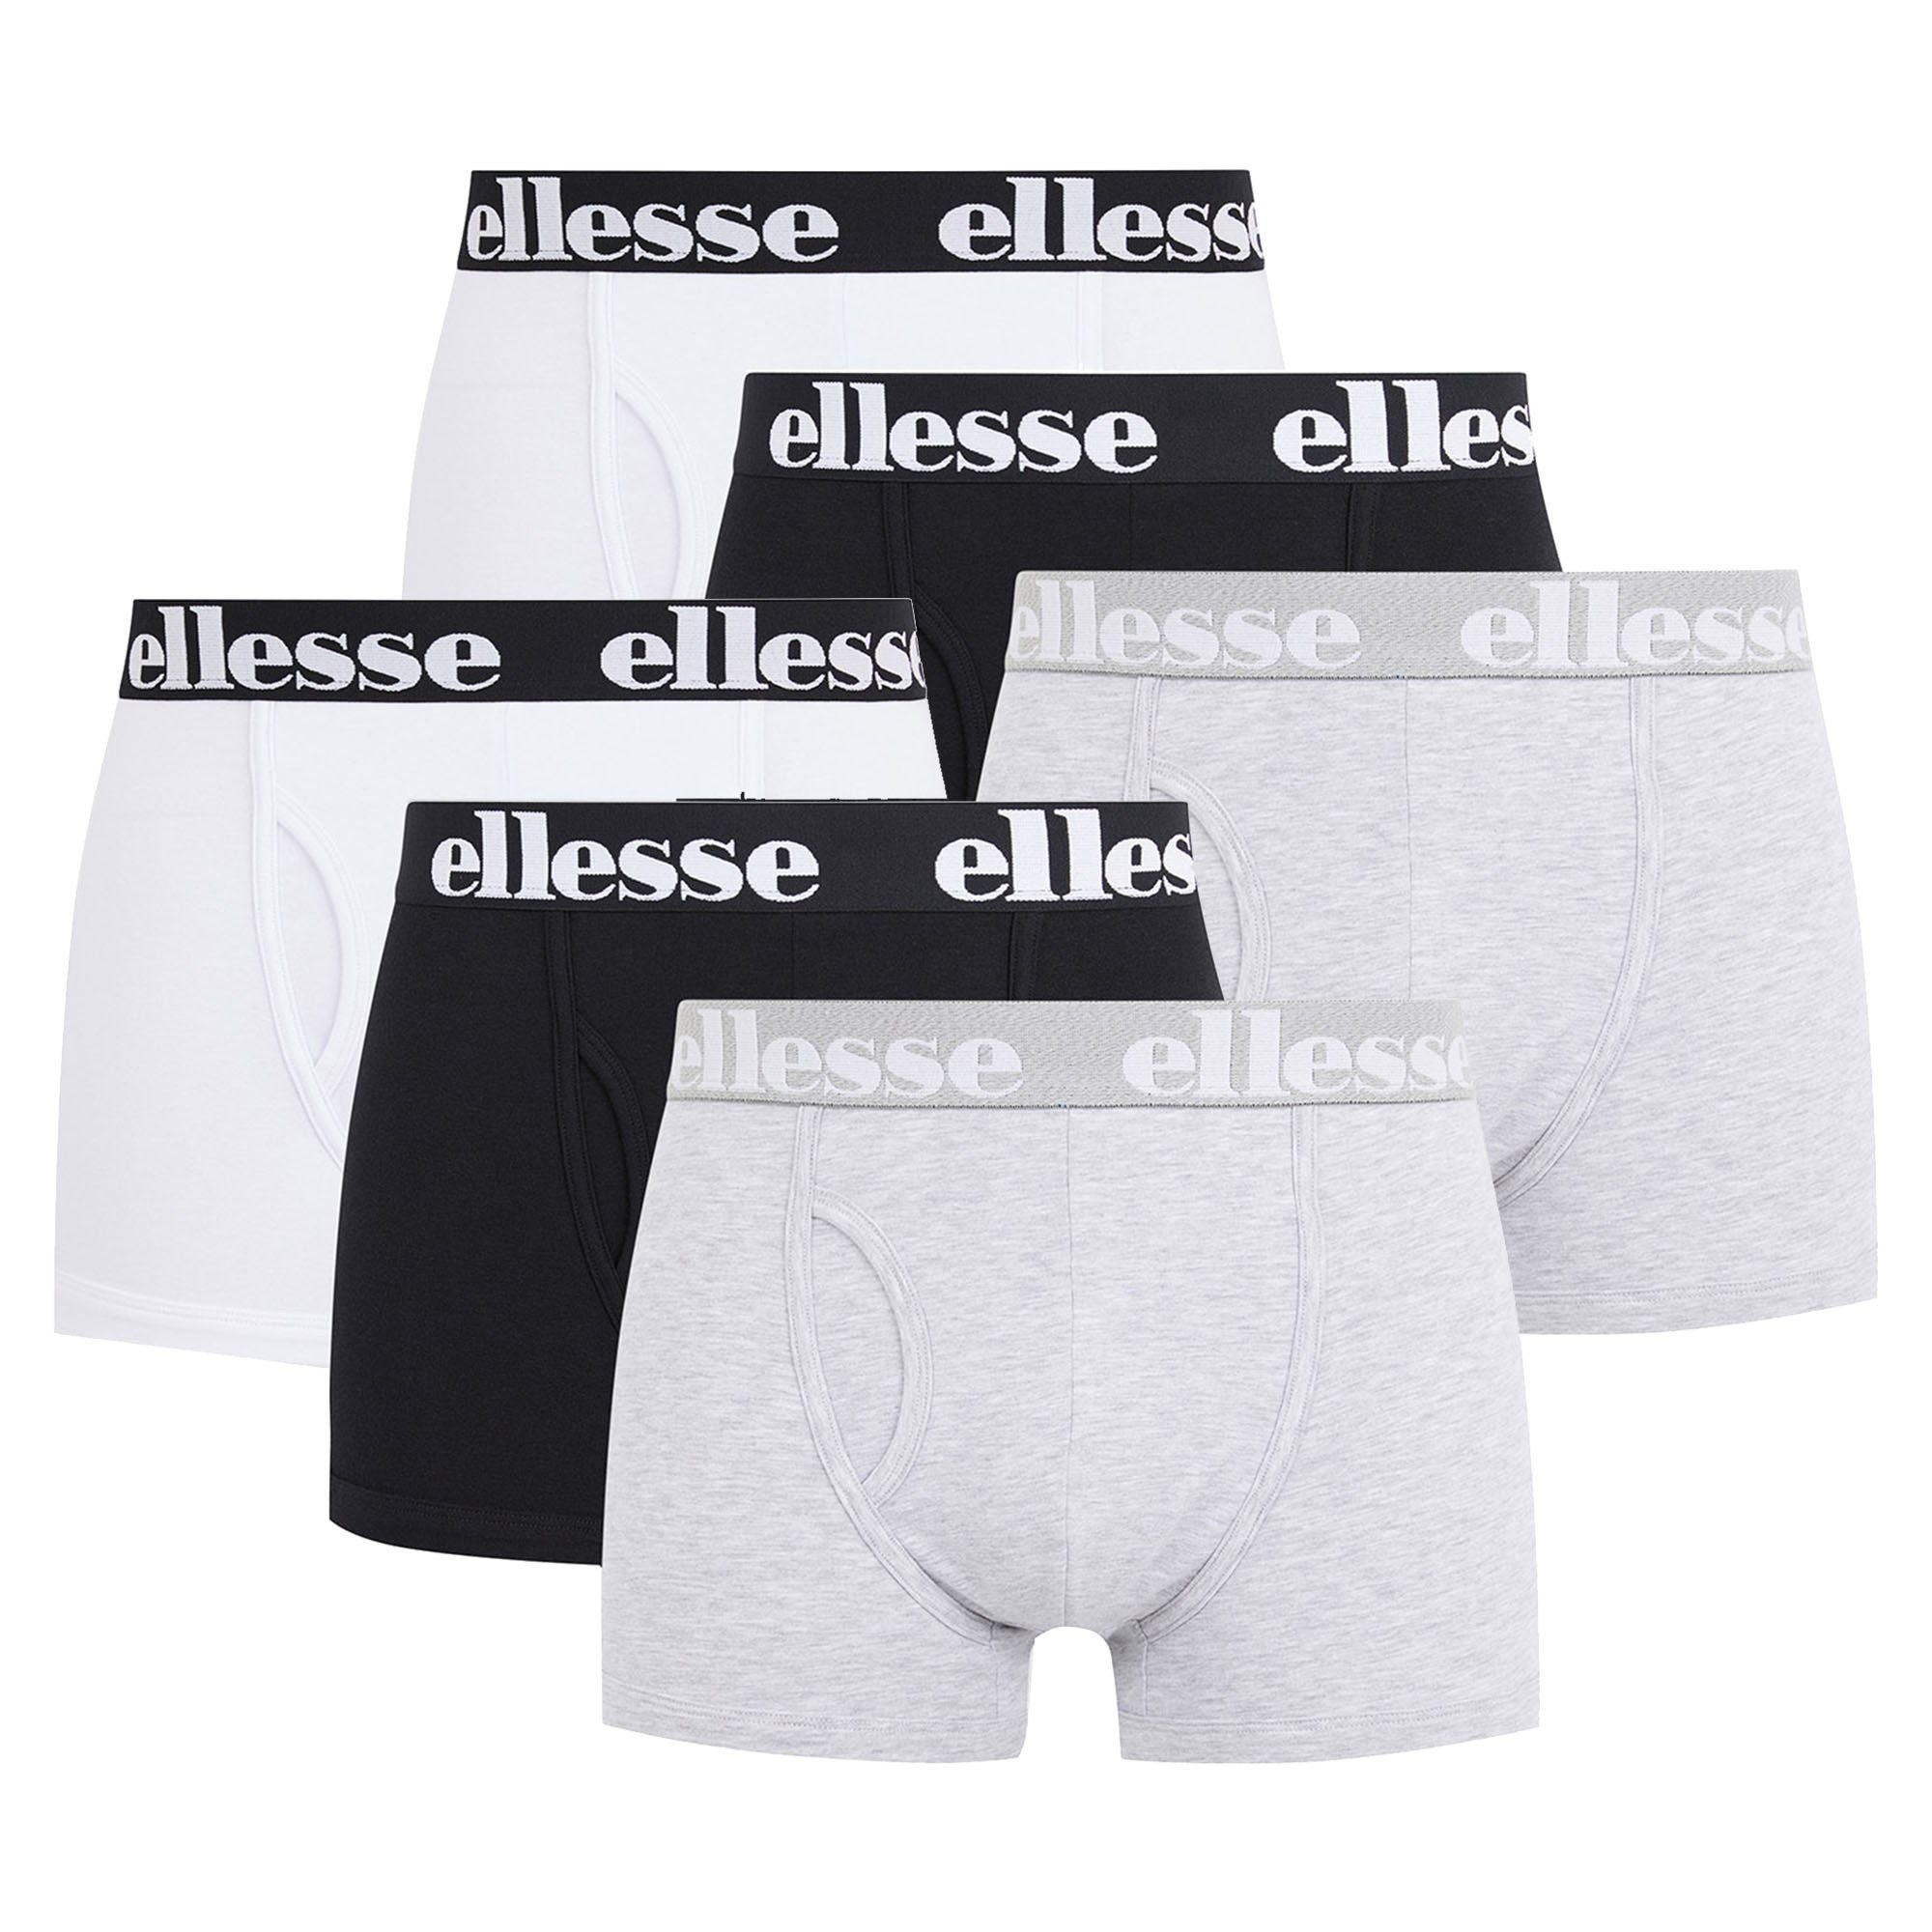 Ellesse Boxer Herren Boxer Shorts HALI, 6er Pack - Fashion Schwarz/Grau/Weiß